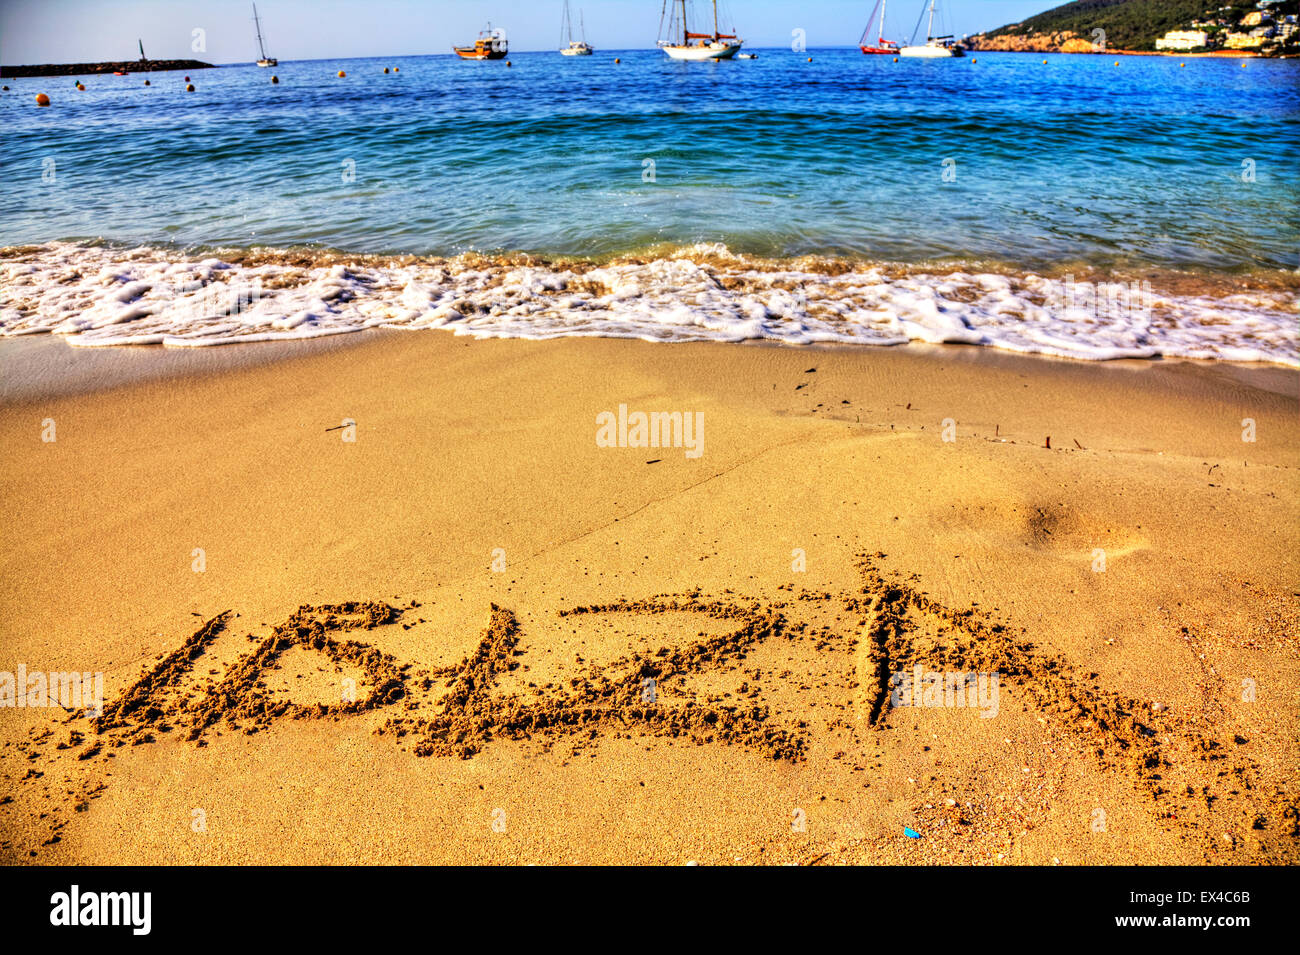 Ibiza-Wort in Sand geschrieben am Strand Resort Meer Küste Küste Urlaub Spanien Santa Eulalia Urlaub Reisen Reise Urlaub Stockfoto